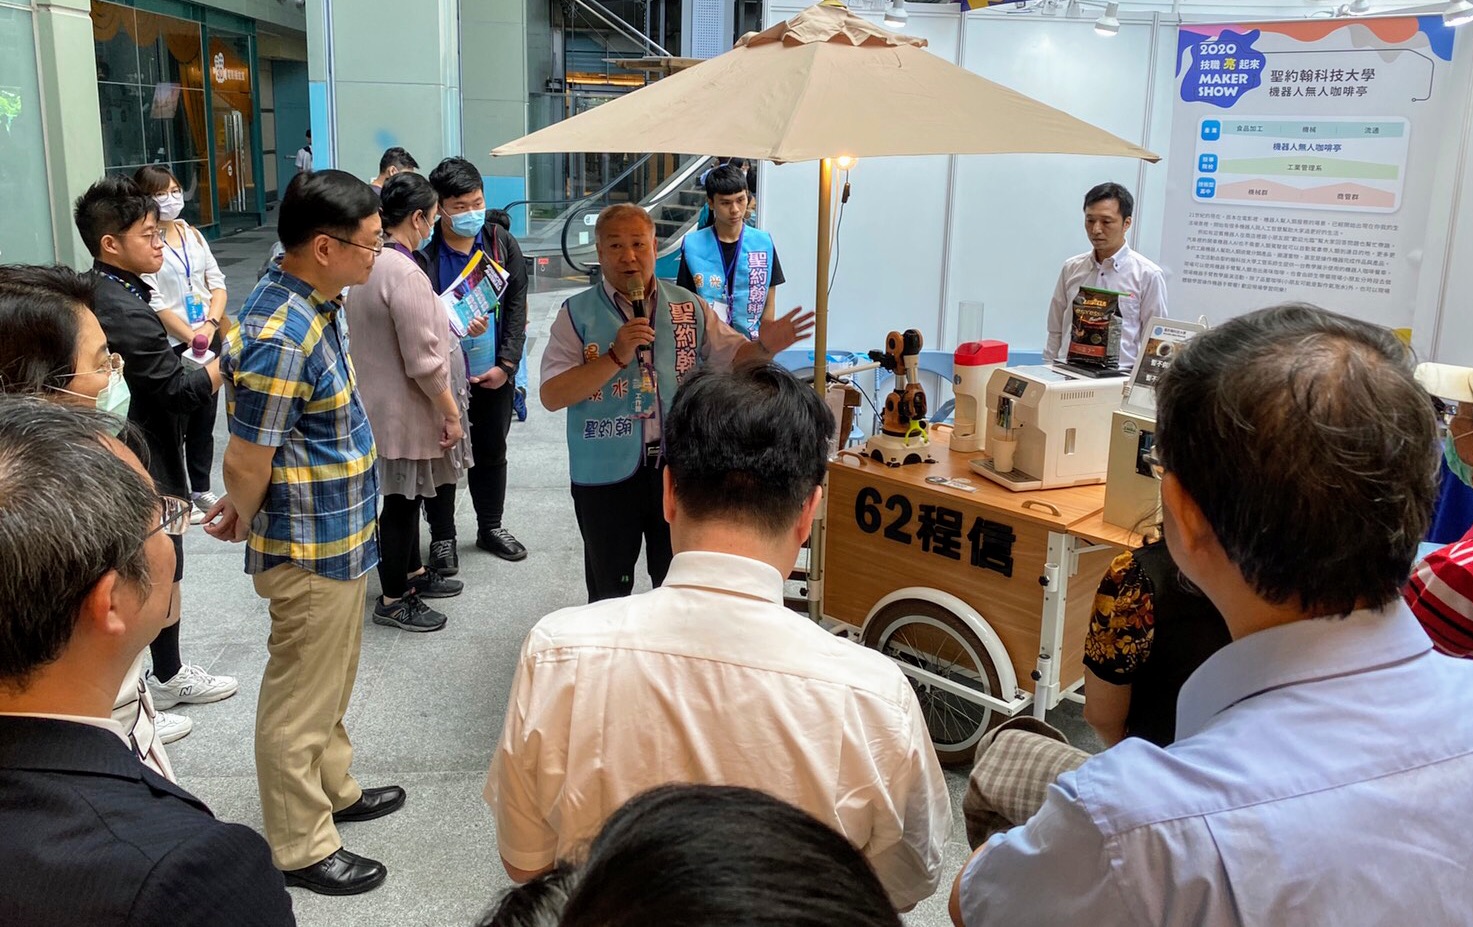 「智慧機器手臂學程」是聖約翰科大未來亮點教學內容，「程62信機器人咖啡餐車」在展場中率先提供觀眾智慧生活創新體驗。